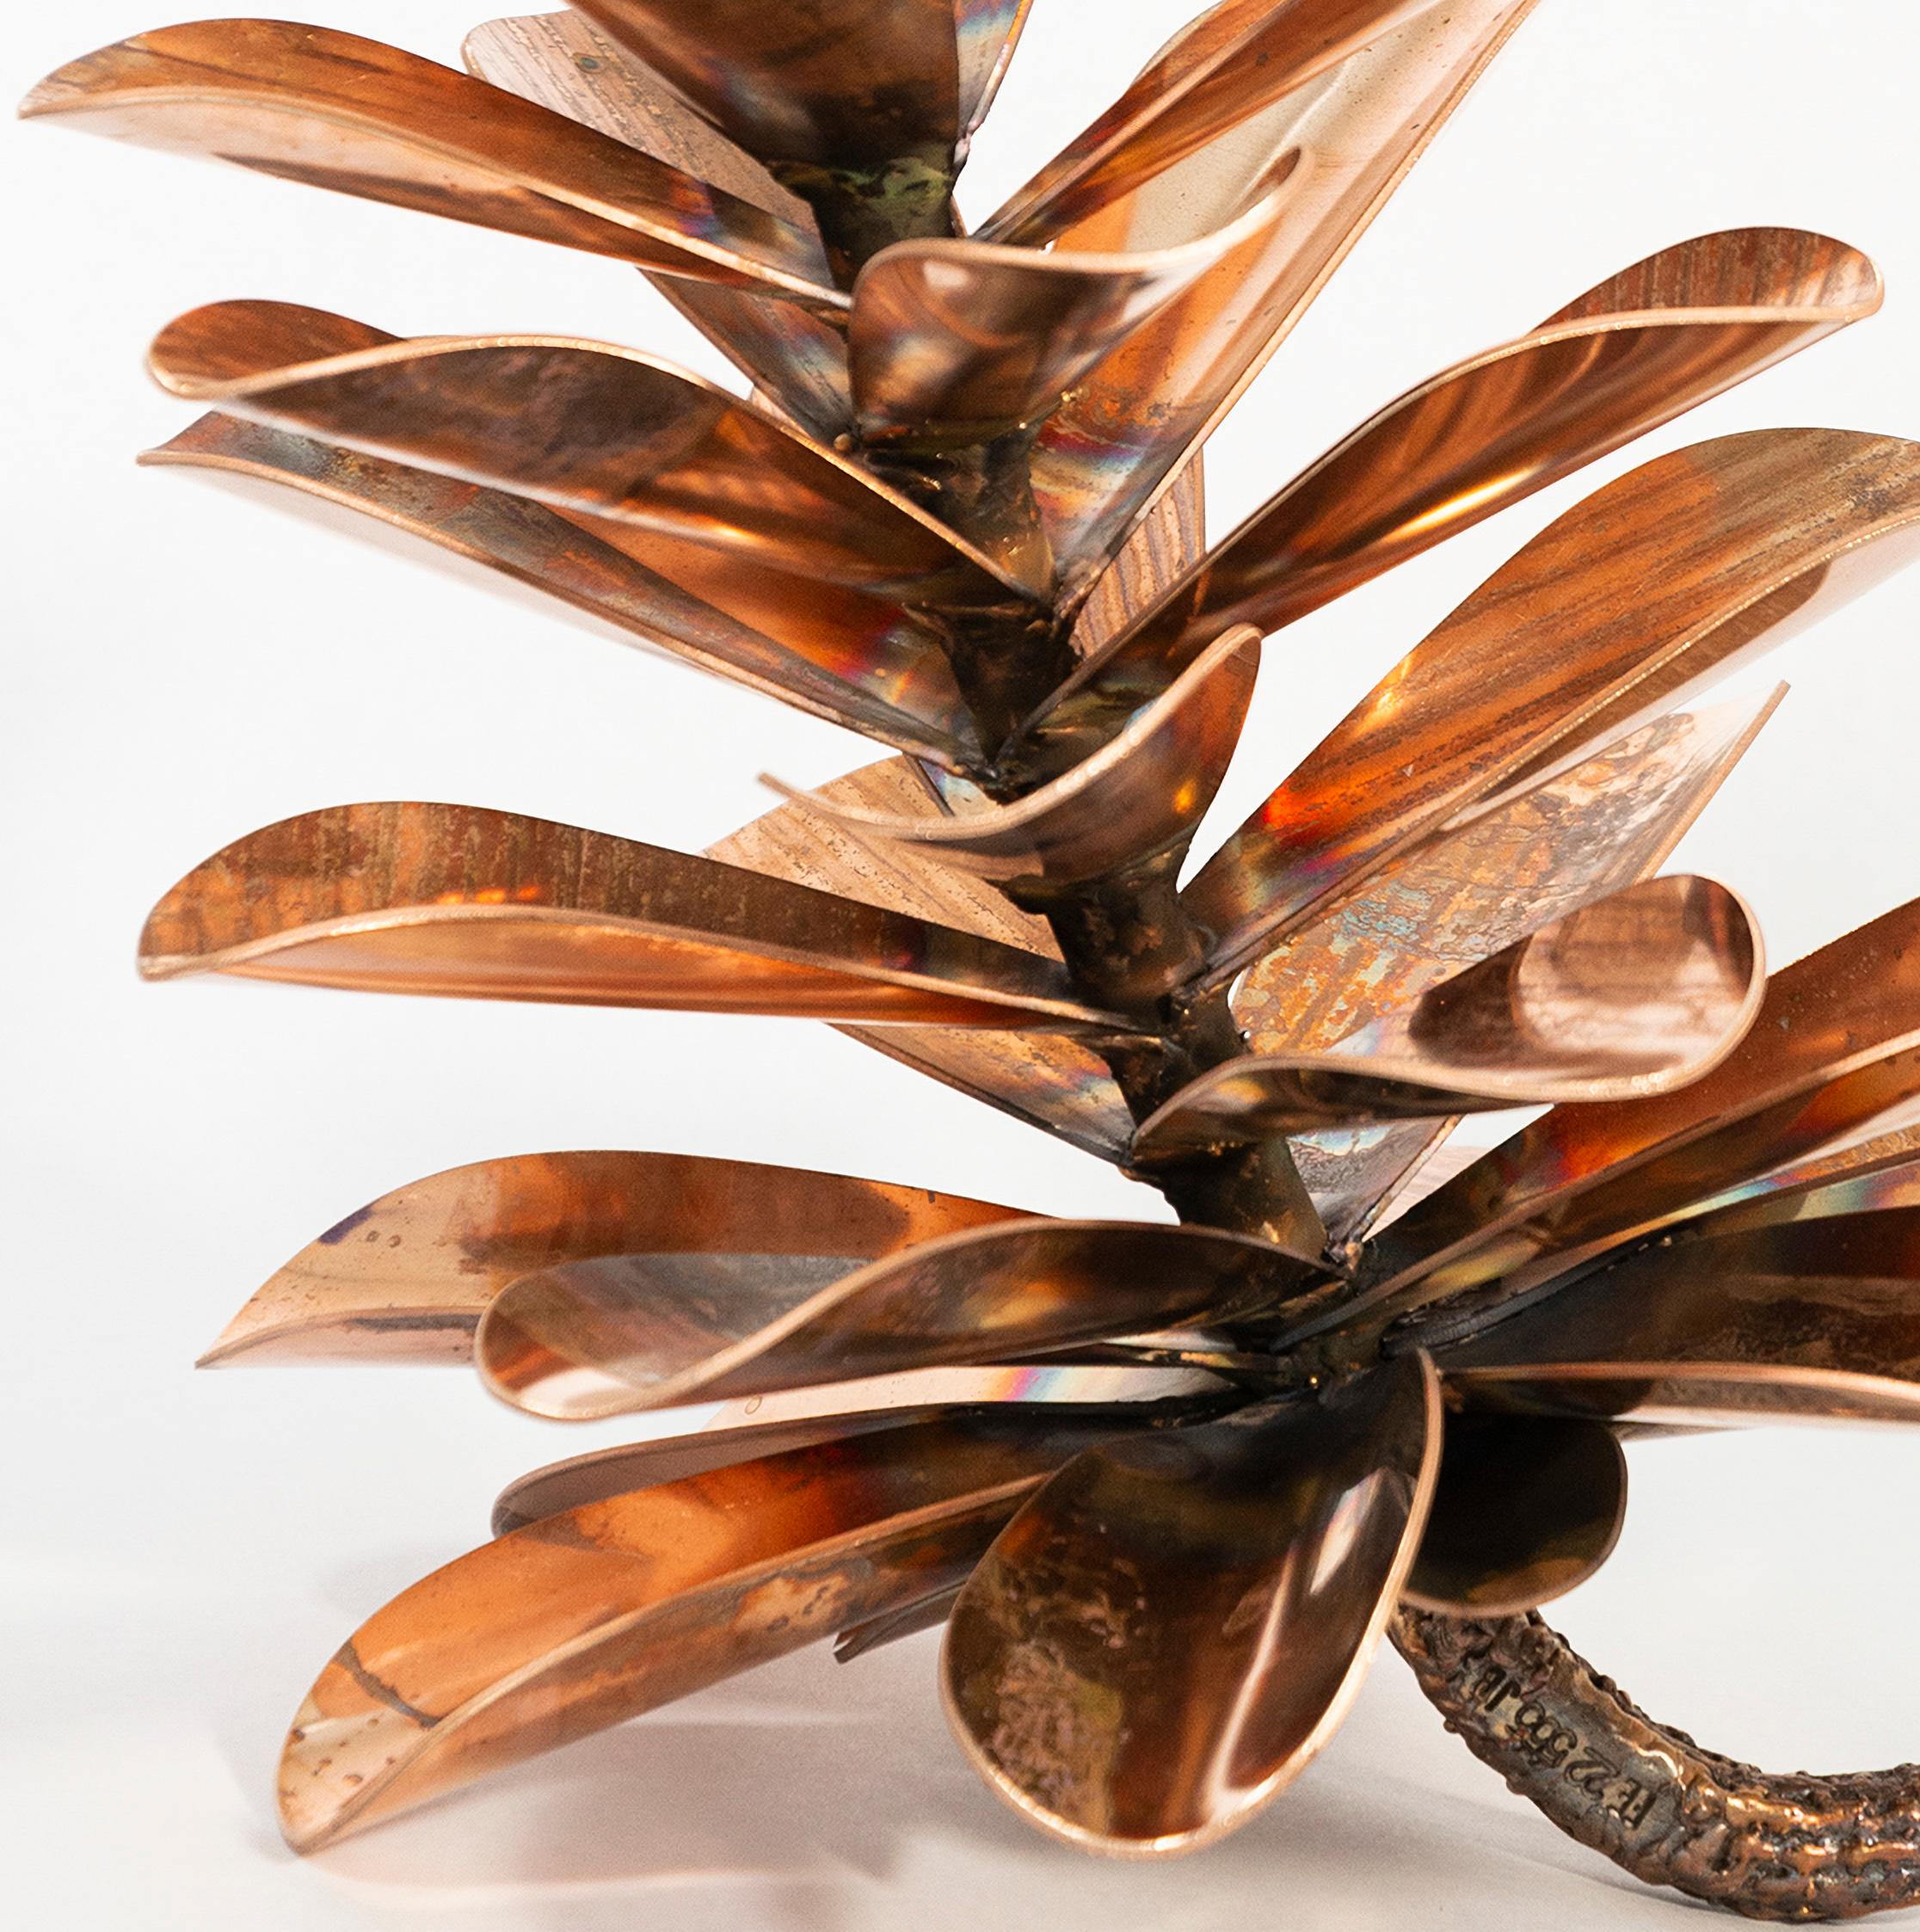 Der kanadische Bildhauer Floyd Elzinga lässt sich von der Natur zu seinen ikonischen Bildern inspirieren. In seinem Studio am zerklüfteten Niagara-Steilhang schafft er wunderschöne Skulpturen aus natürlichen Formen - Bäumen, Ahornblättern und